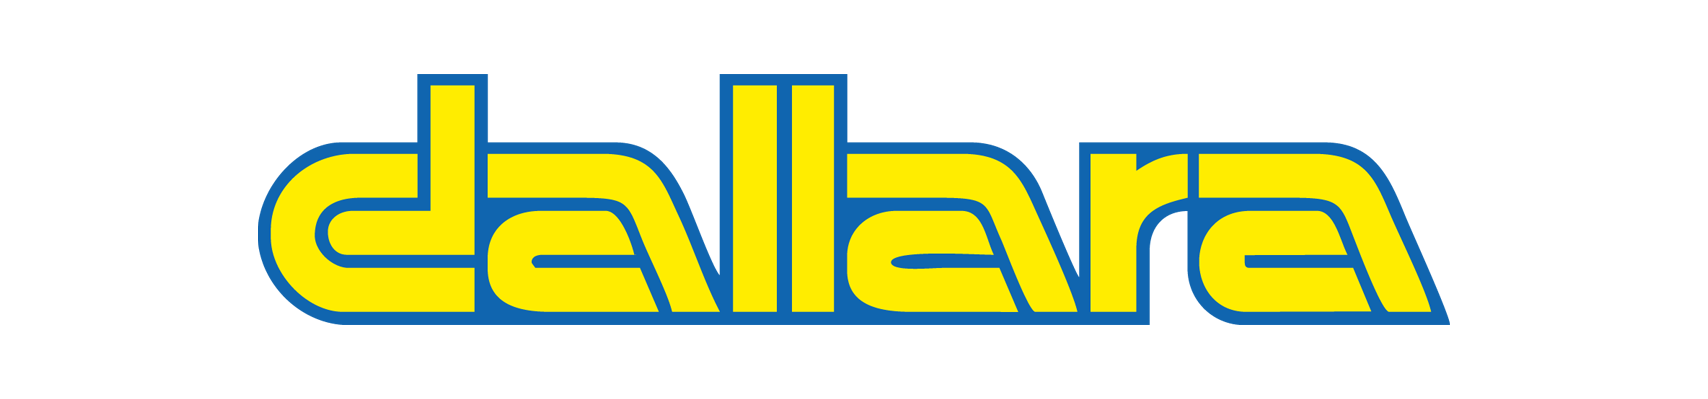 Dallara logo